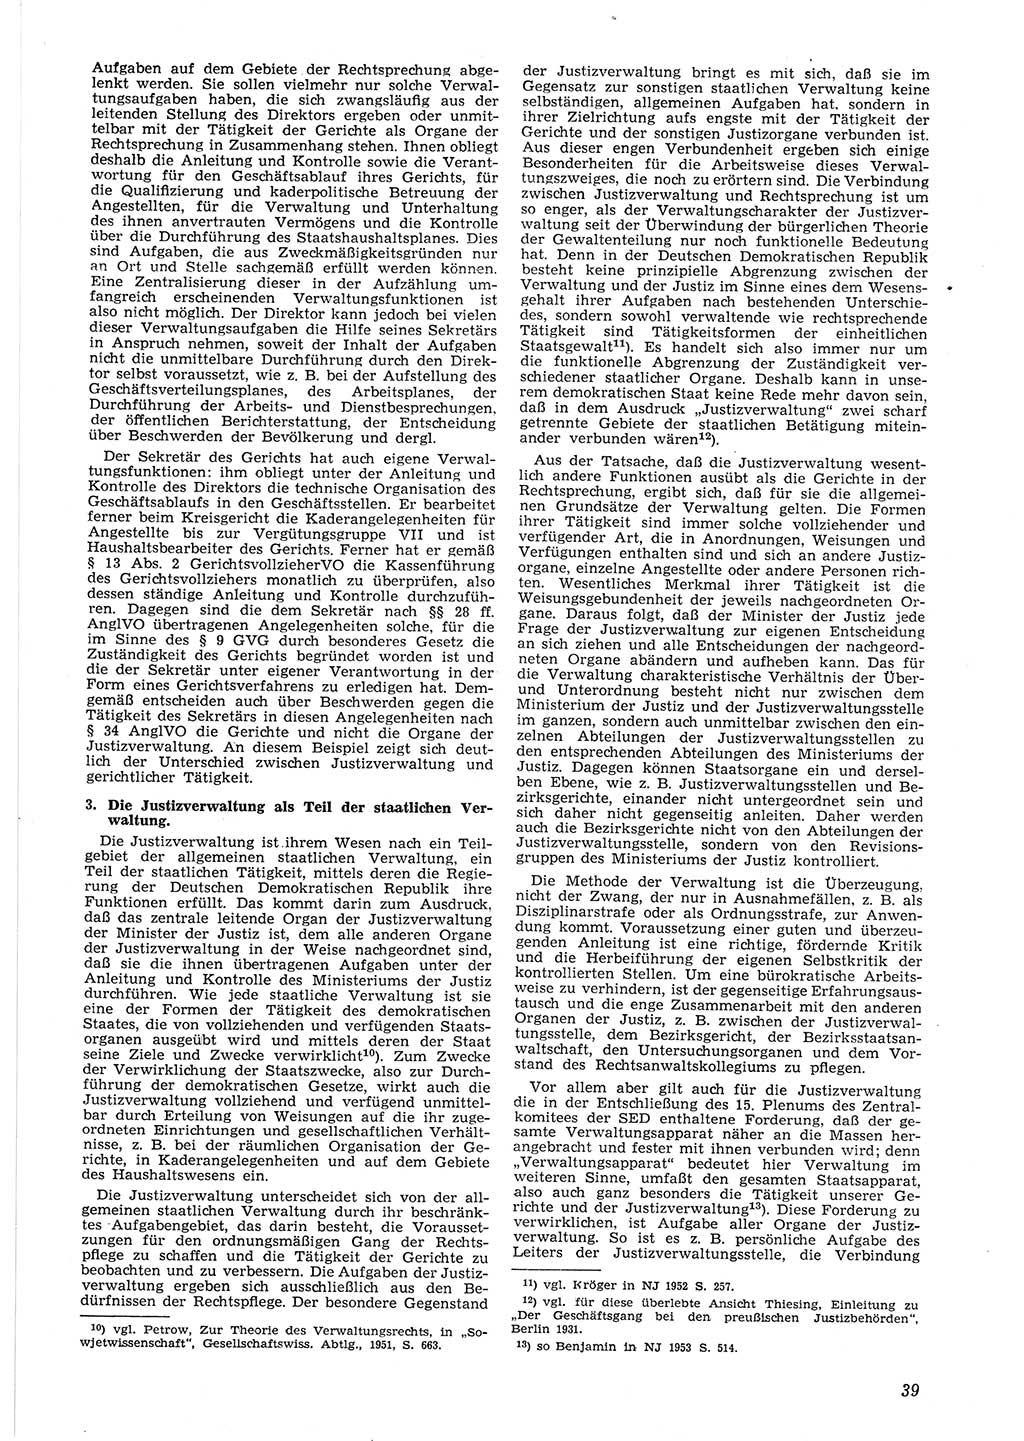 Neue Justiz (NJ), Zeitschrift für Recht und Rechtswissenschaft [Deutsche Demokratische Republik (DDR)], 8. Jahrgang 1954, Seite 39 (NJ DDR 1954, S. 39)